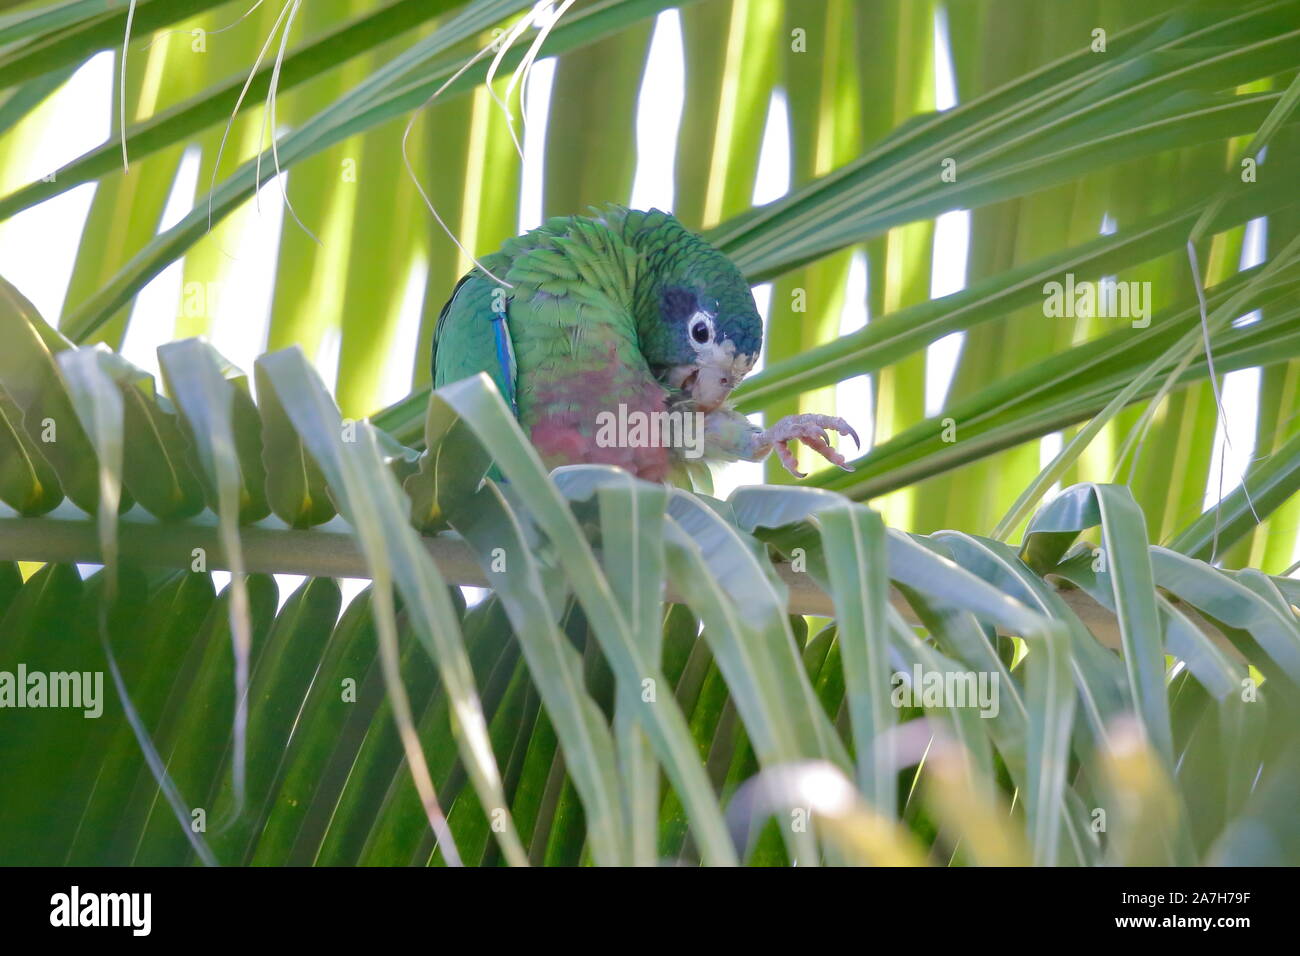 Die Hispaniolan amazon oder Hispaniolan Papagei ist eine Pflanzenart aus der Gattung der Papagei in der Familie Psittacidae. Es ist auf Hispaniola gefunden Stockfoto